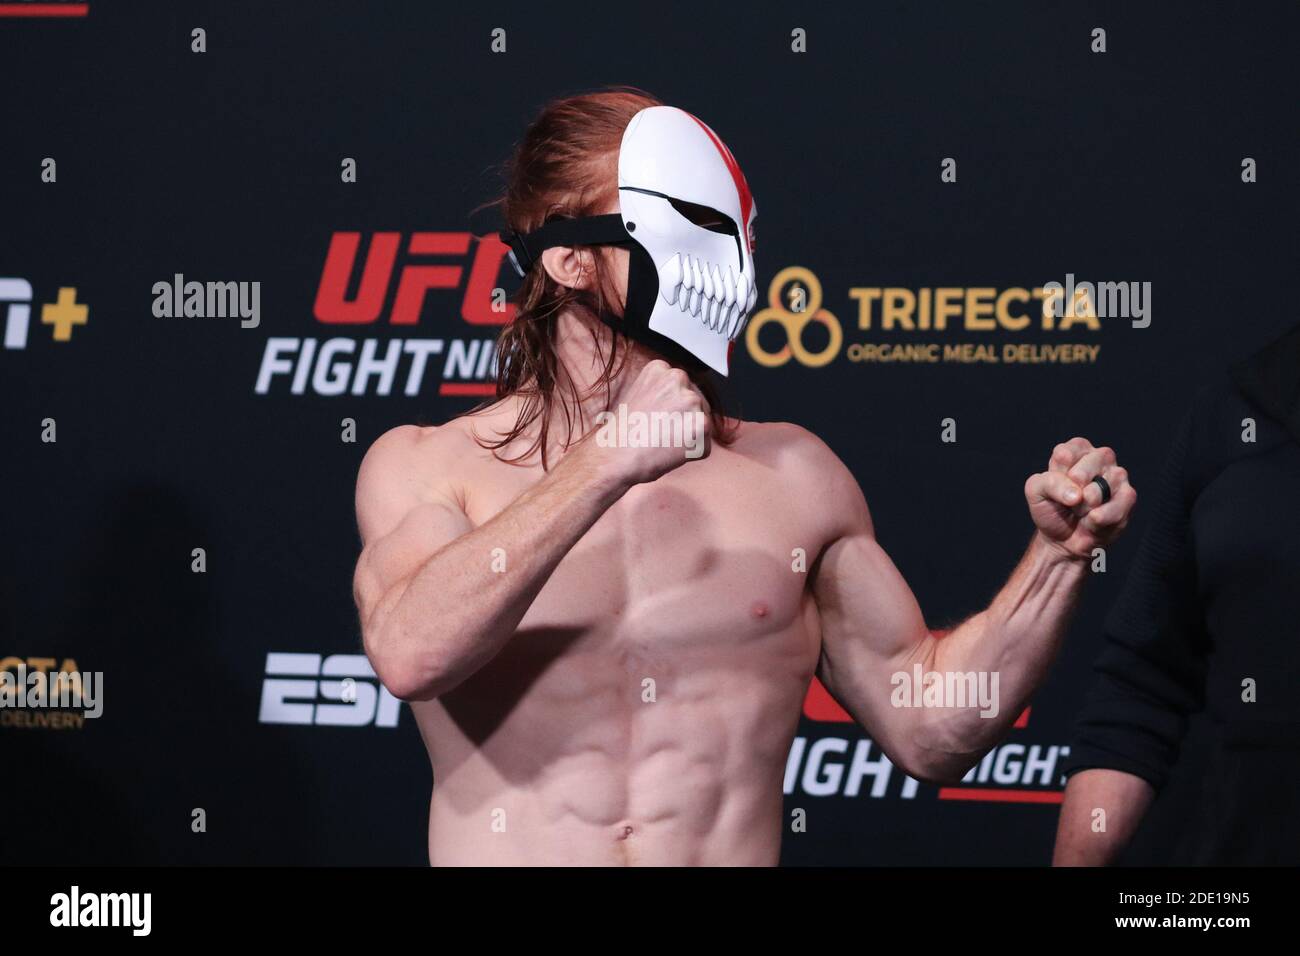 Las Vegas, Nevada, Las Vegas, Nevada, États-Unis. Bill Algeo et Spike Carlyle affrontent lors de l'UFC Vegas 15 Weeins à UFC Apex le 27 novembre 2020 à Las Vegas, Nevada, États-Unis. Crédit : Diego Ribas/PX Imagens/ZUMA Wire/Alay Live News Banque D'Images